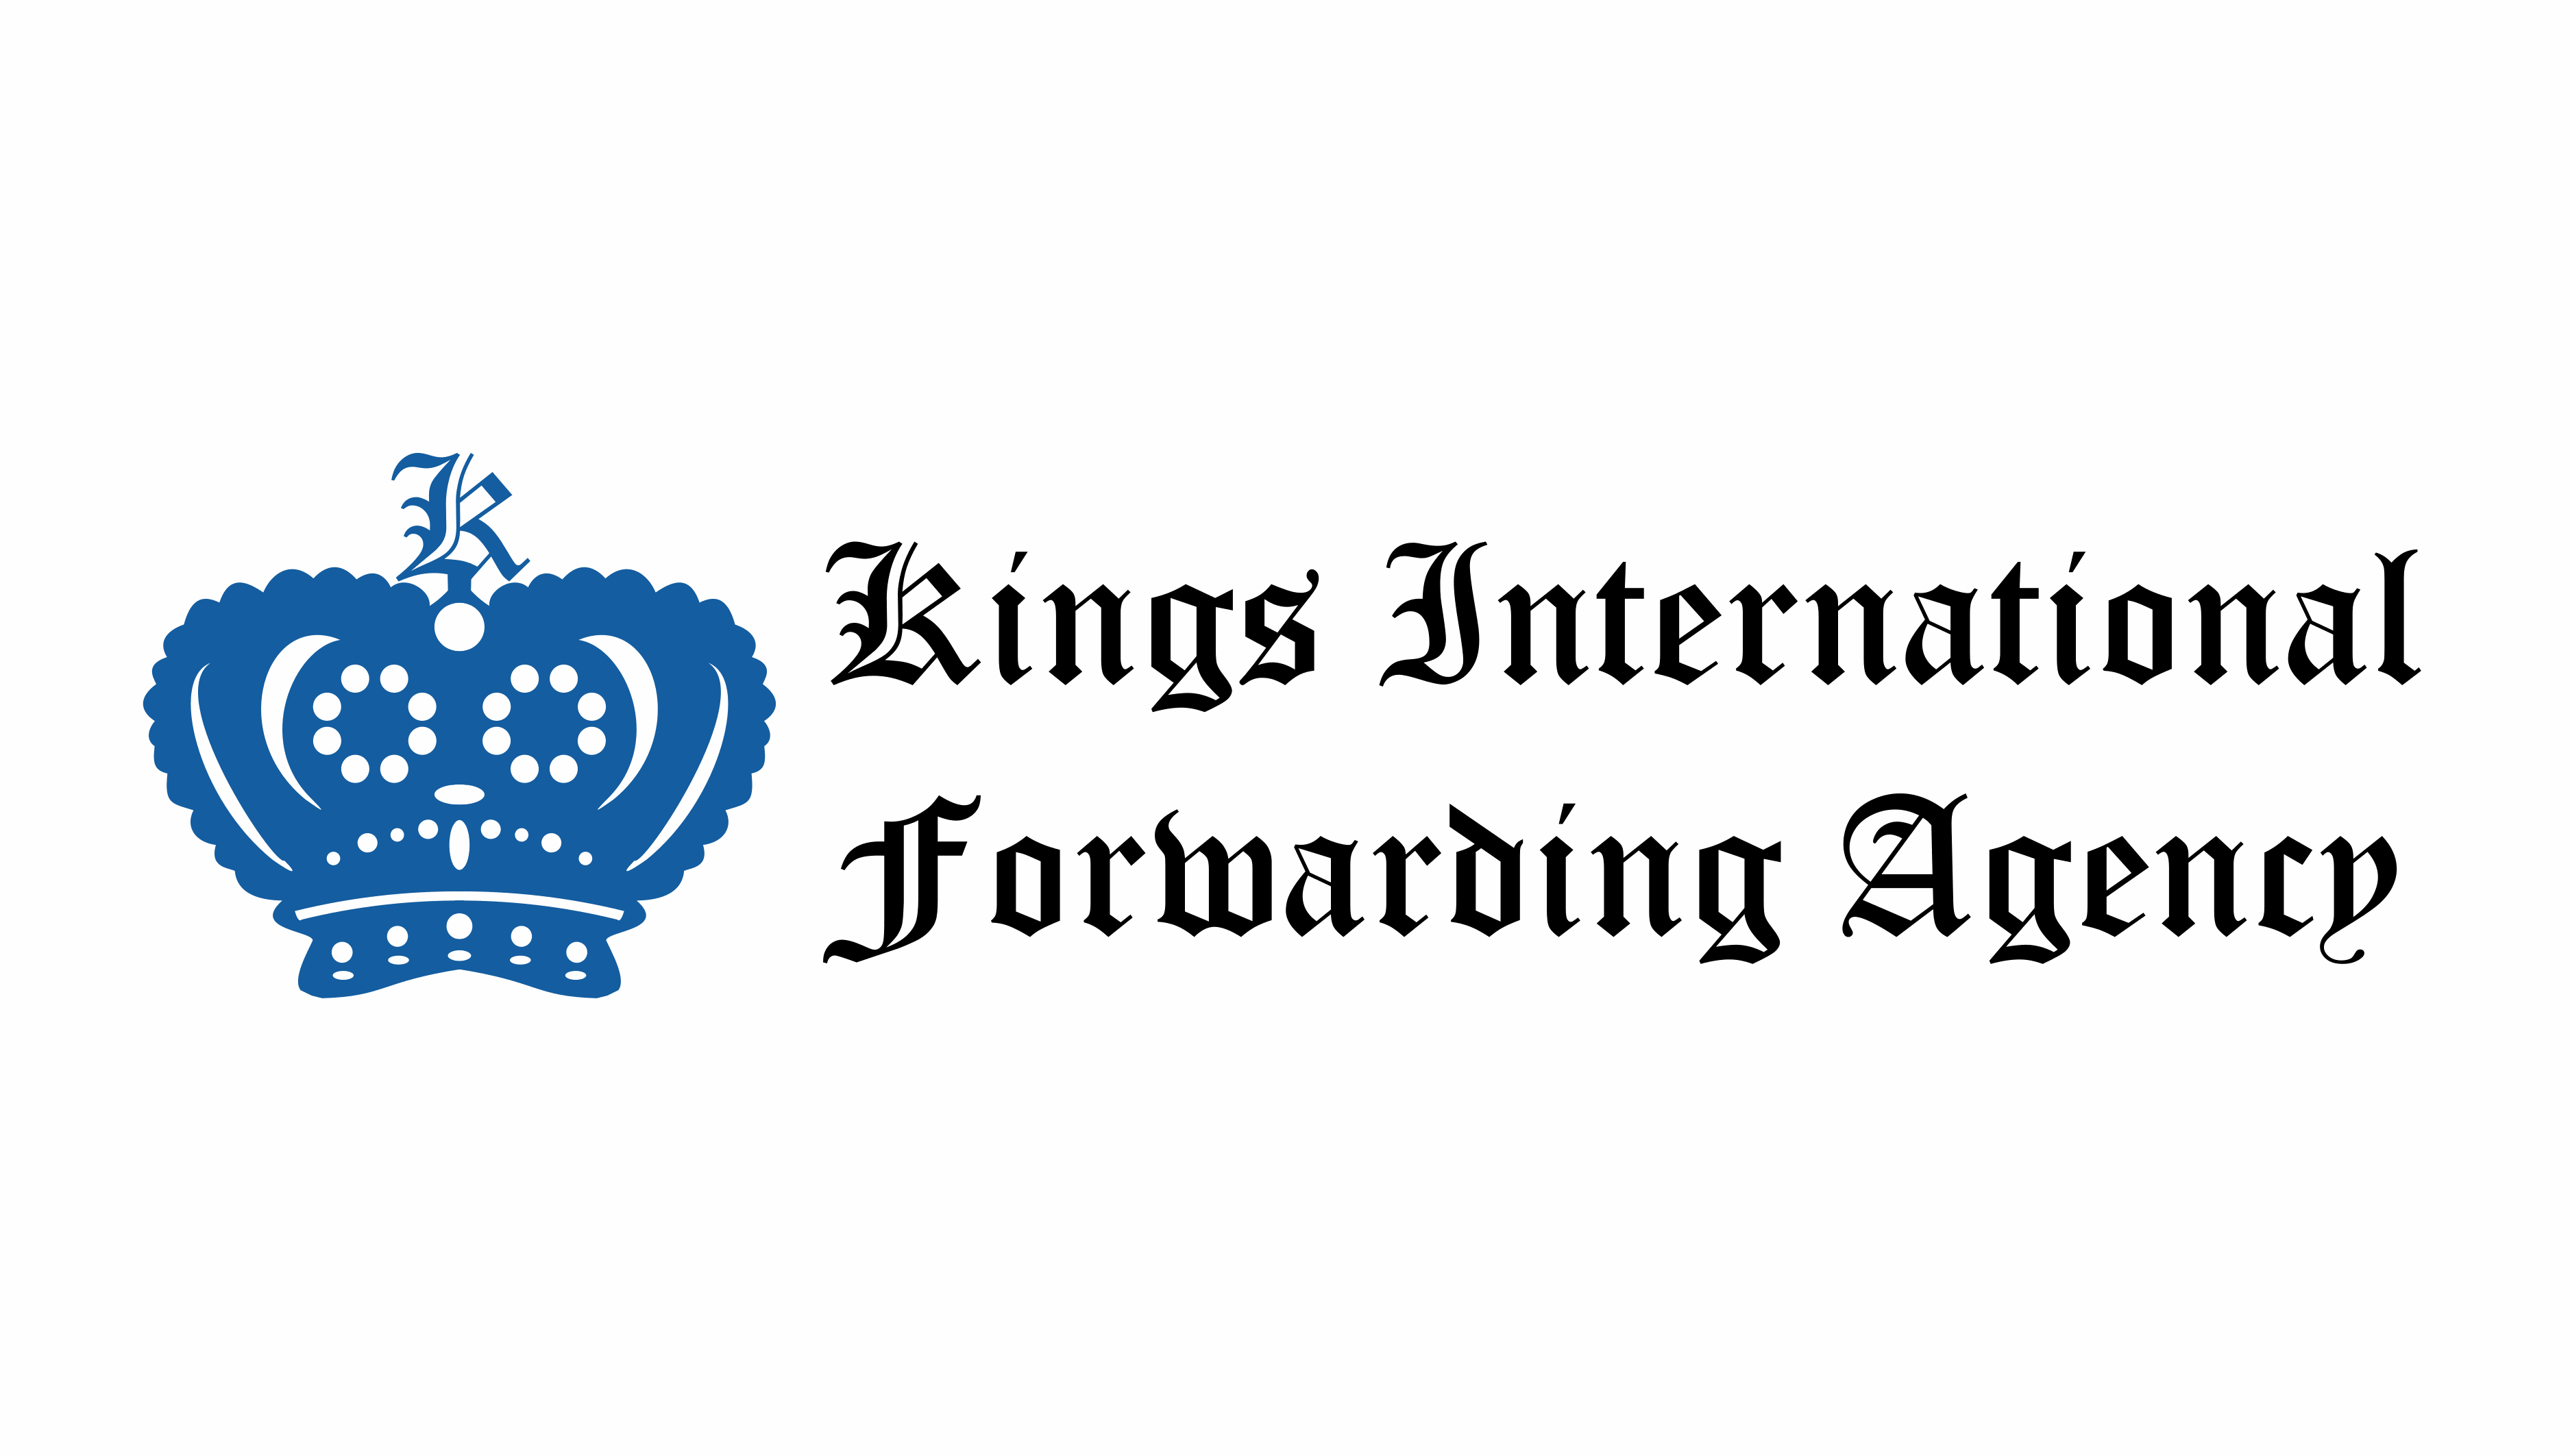 Kings International